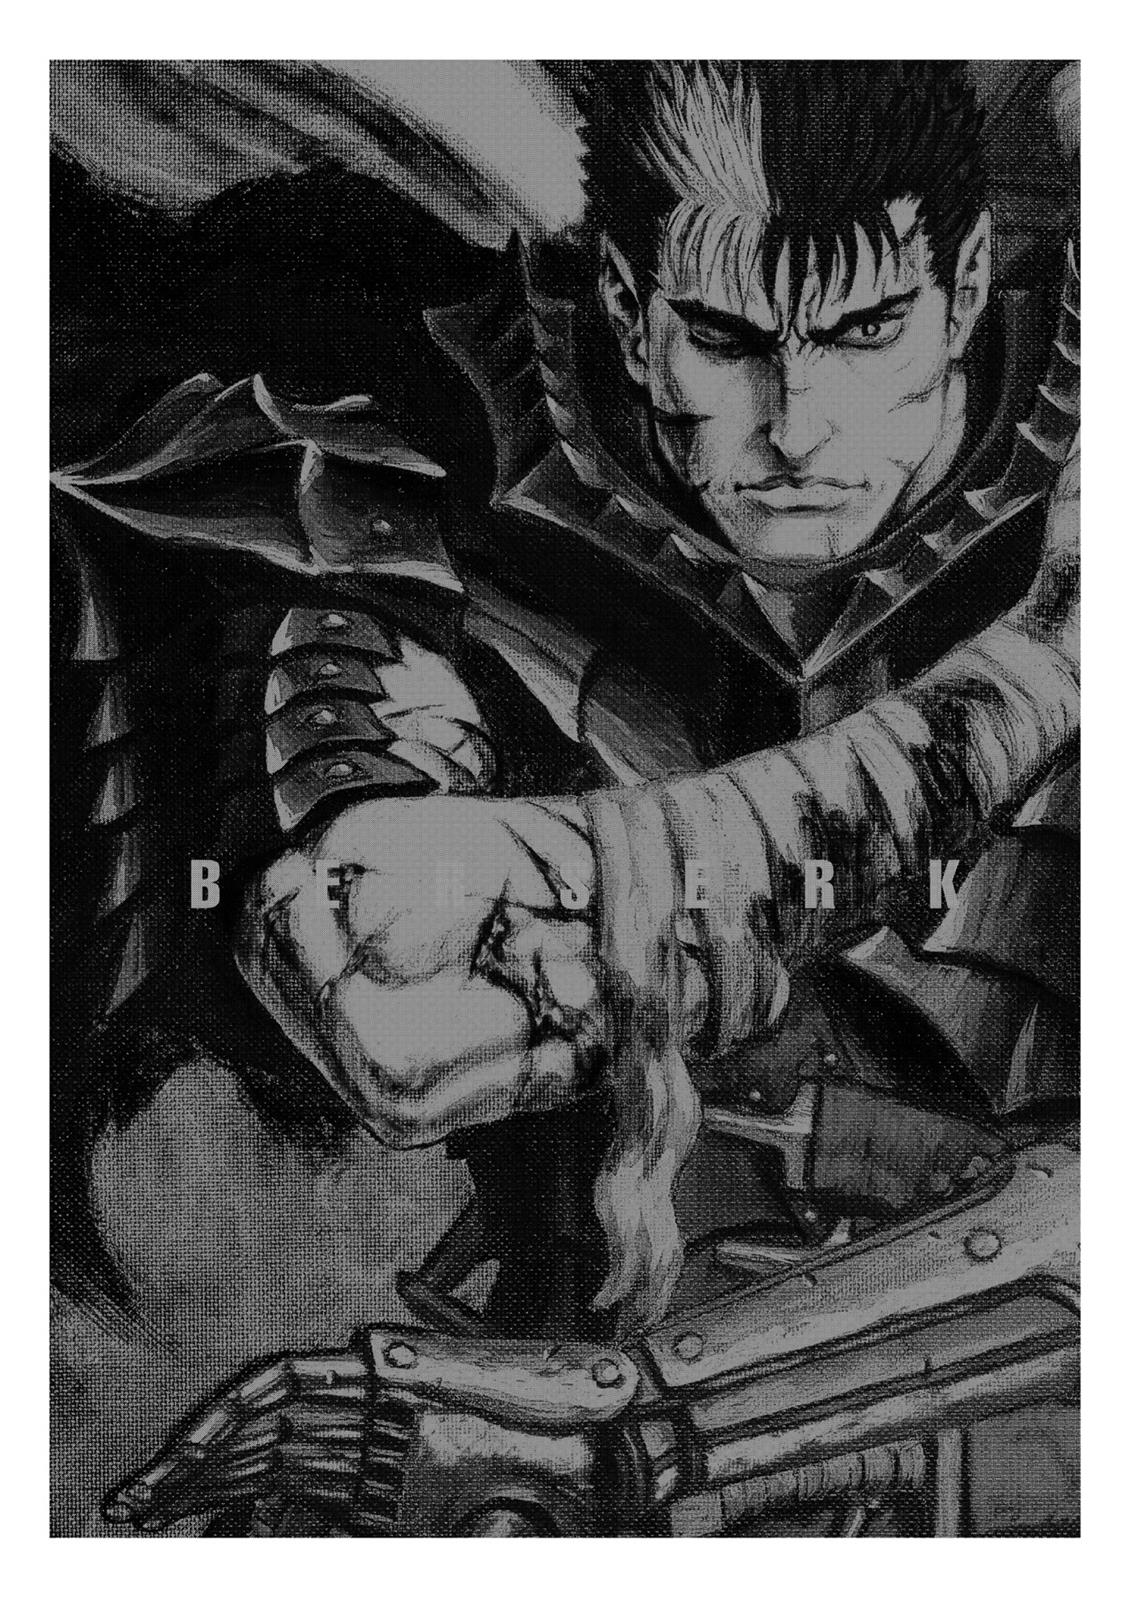 Berserk Manga Chapter 333 image 18